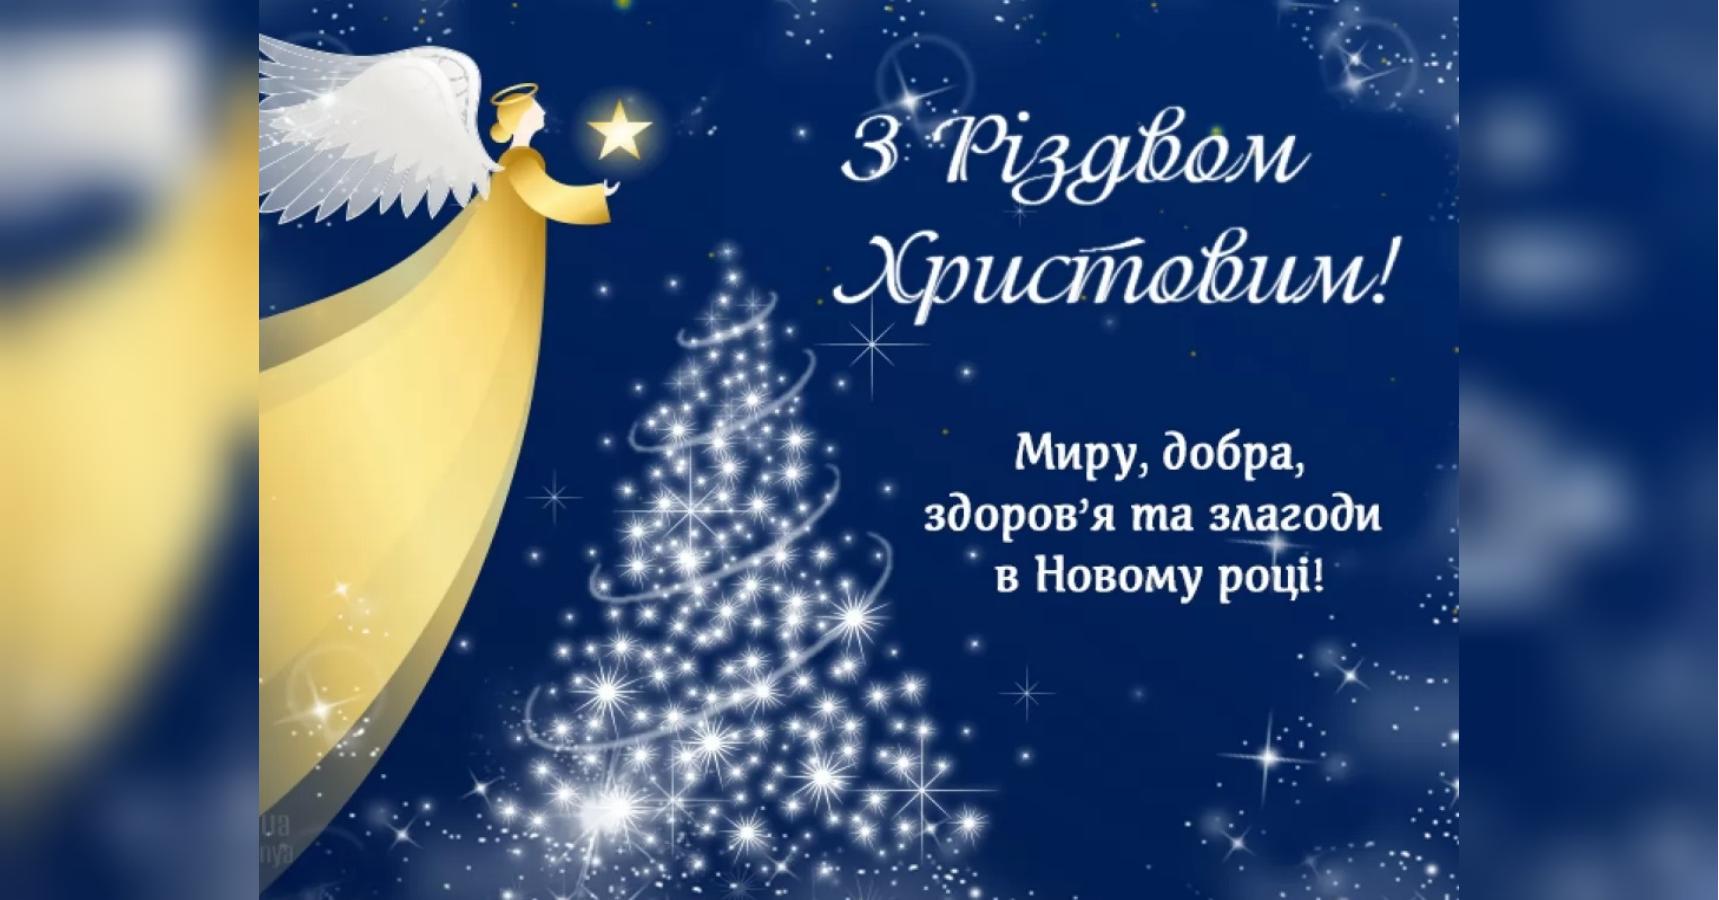 Картинки и Открытки с Рождеством Христовым- Скачать бесплатно на paraskevat.ru